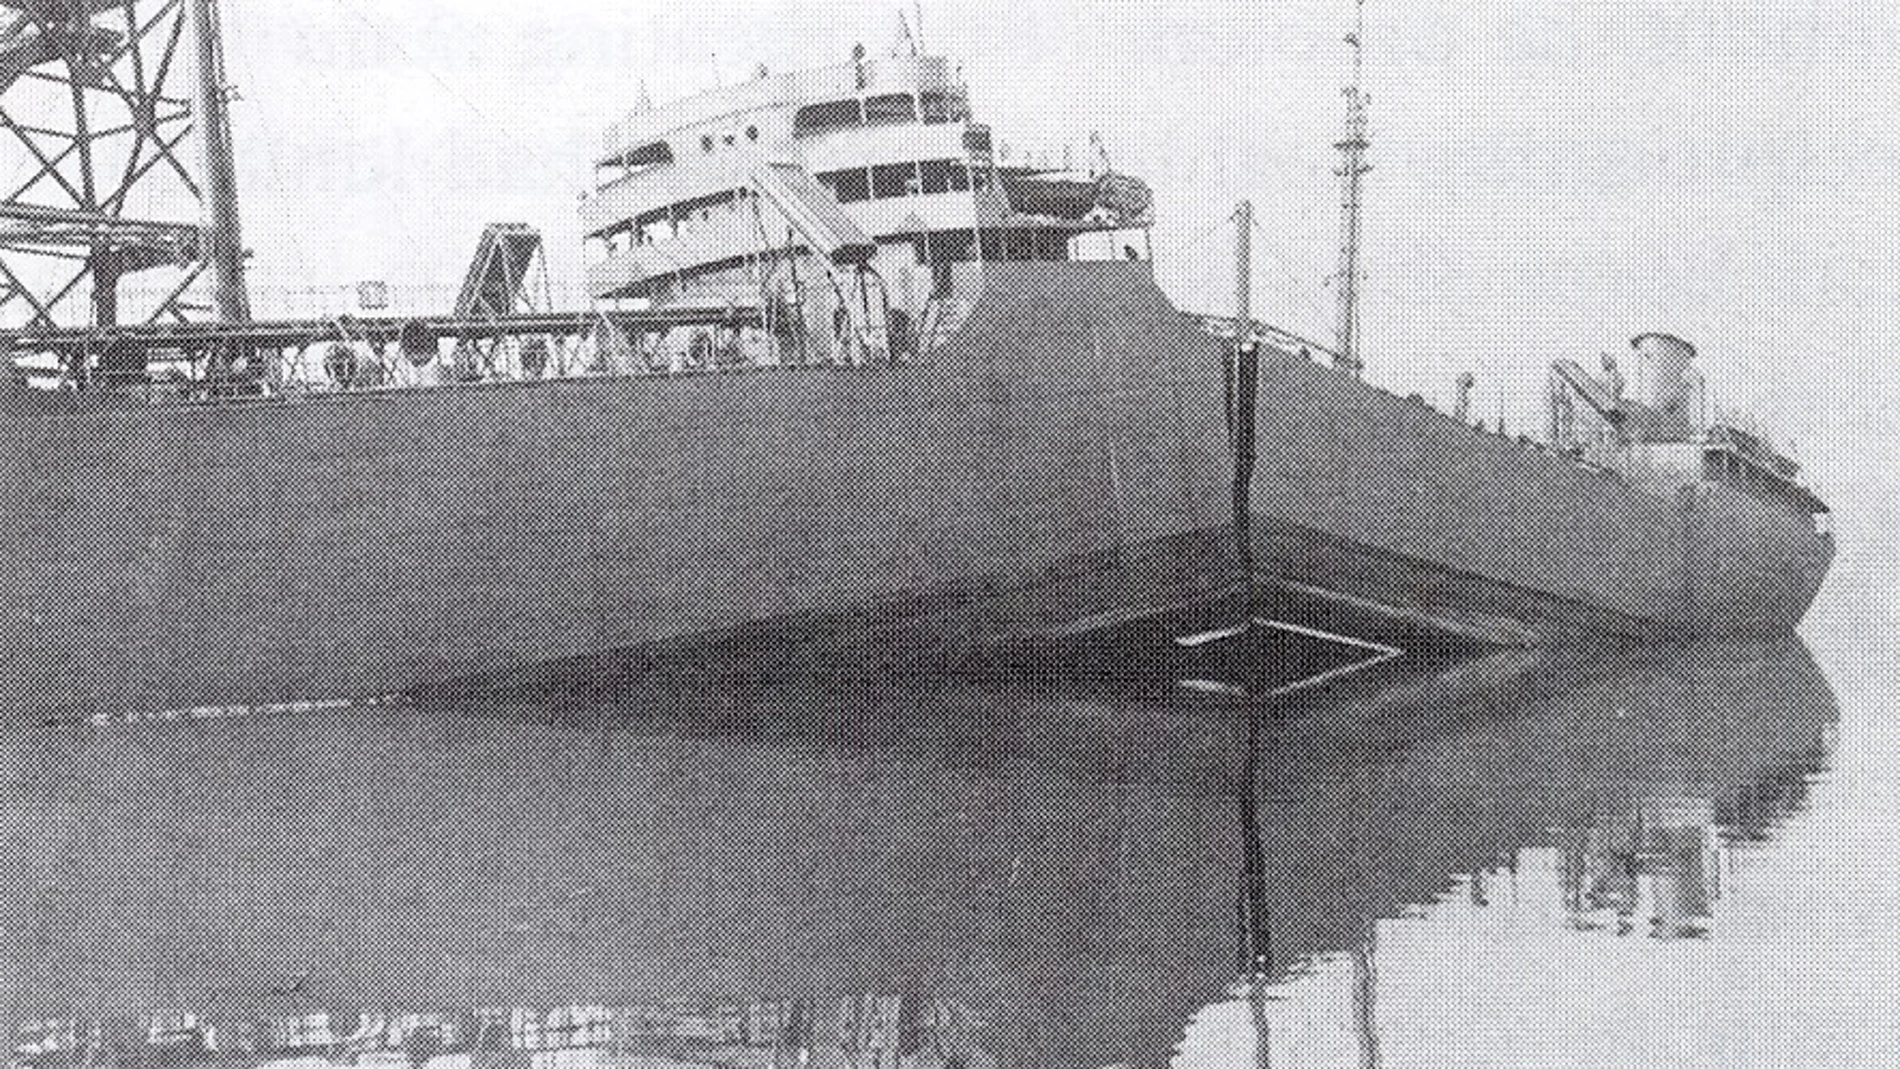 Fotografía del SS Shenectady, partido en dos tras el fallo catastrófico de su cascarón.